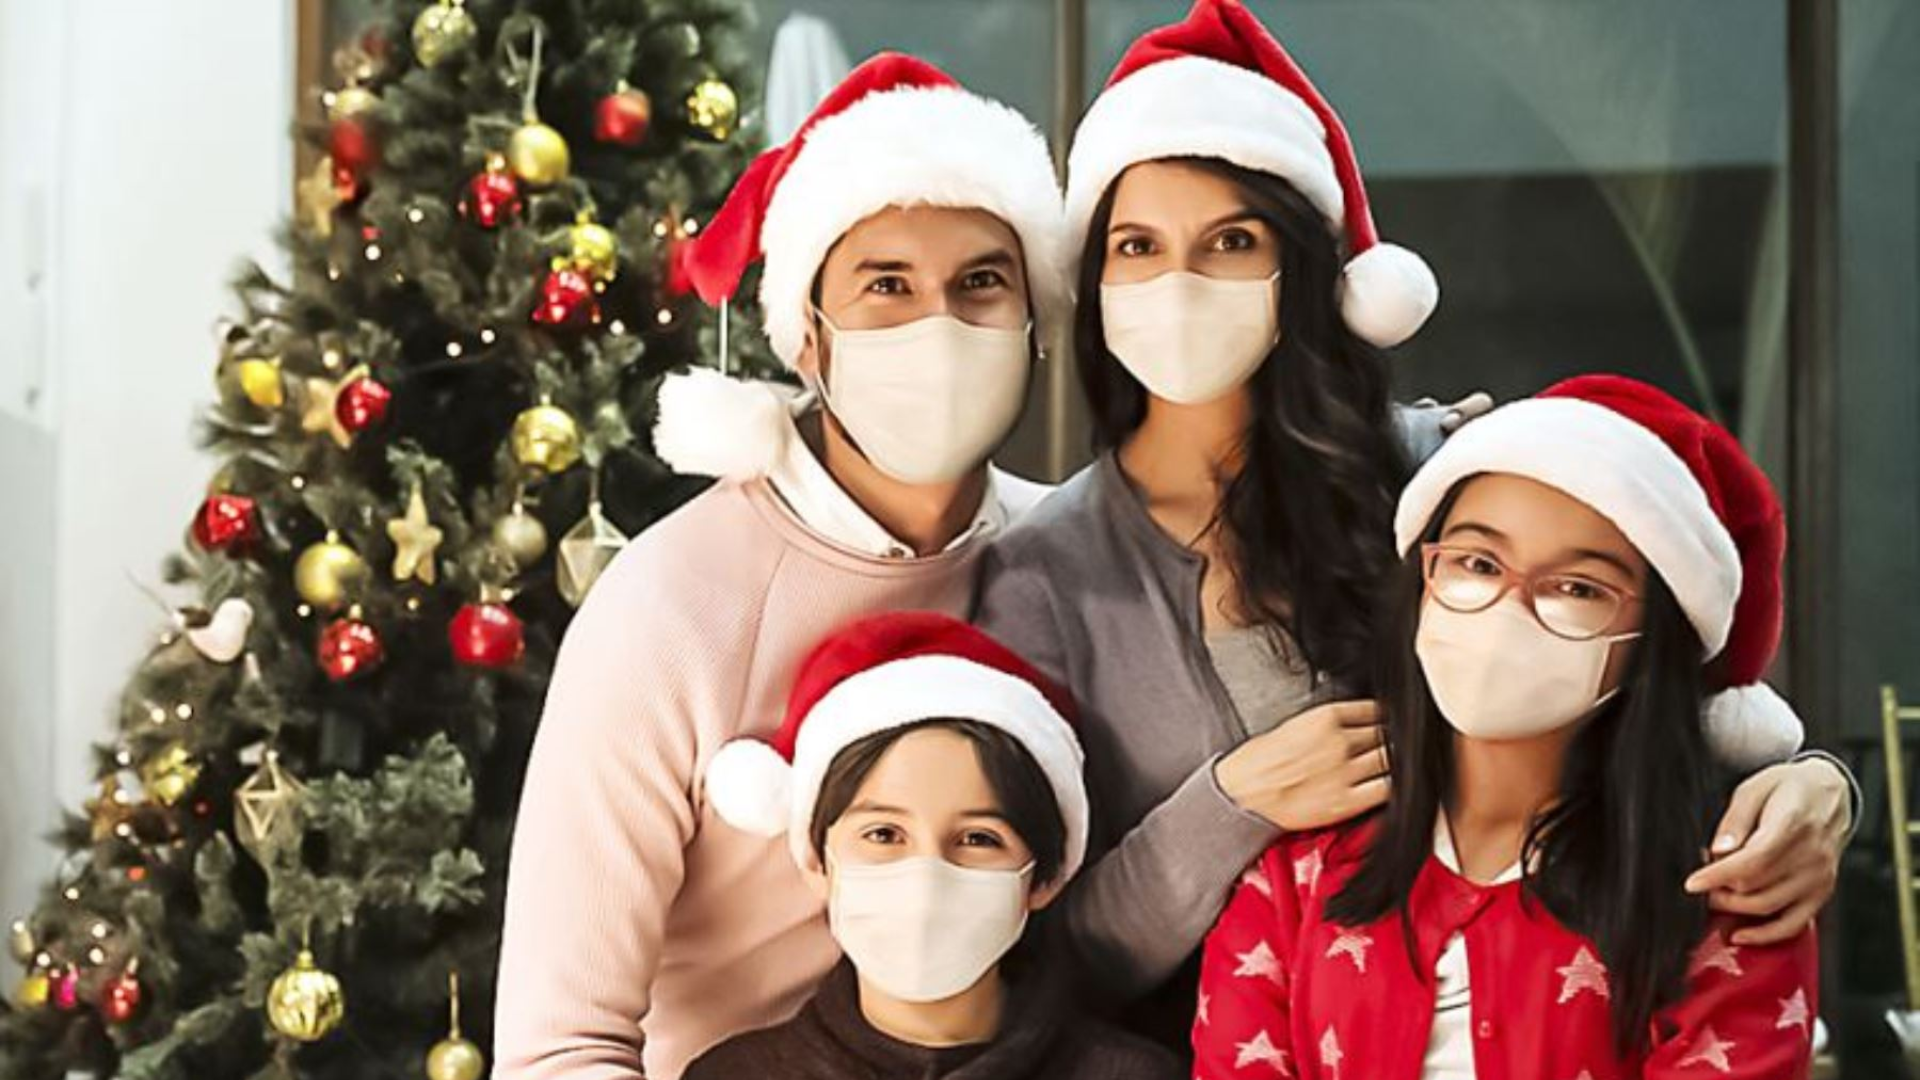 Minsa recommande d'utiliser des masques pendant les festivités de fin d'année en raison de l'augmentation des infections au COVID-19